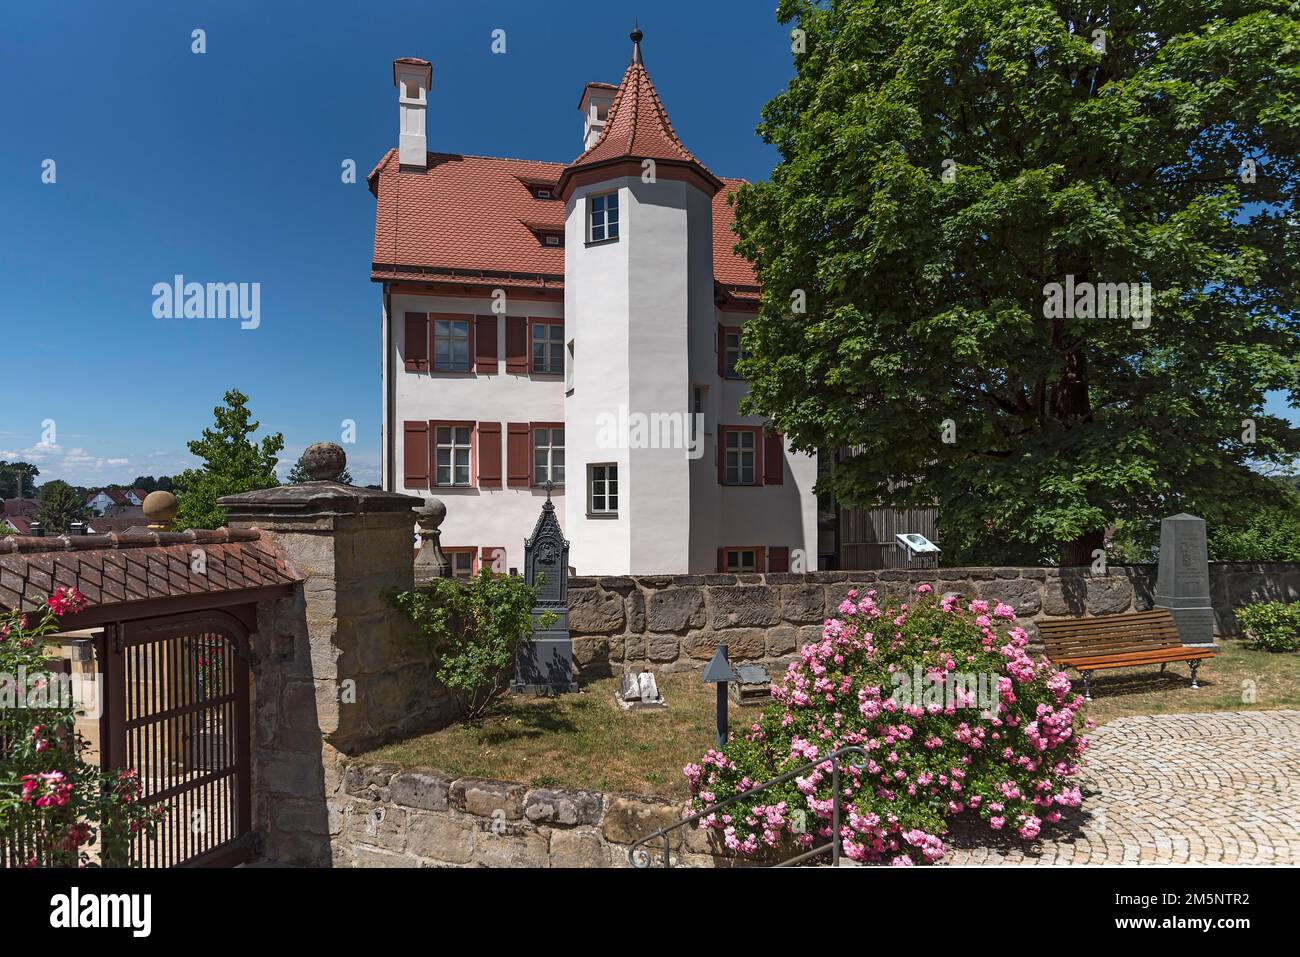 Die Weiße Burg aus dem Jahr 1471, heute als Museum genutzt, Heroldsberg, Mittelfrankreich, Bayern, Deutschland Stockfoto